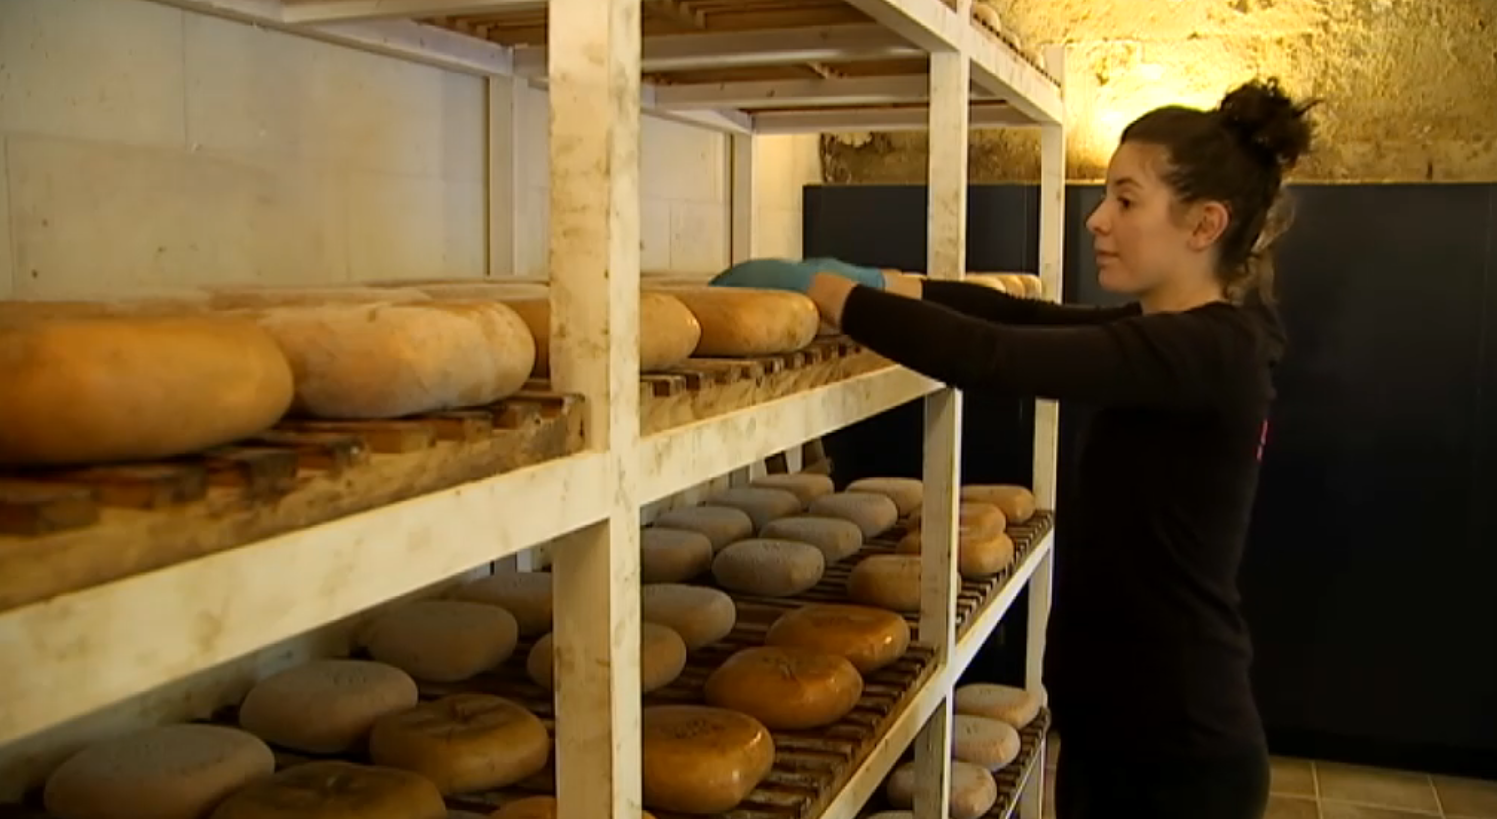 Els productors de la DO formatge Maó-Menorca esperen augmentar les vendes prepandèmia